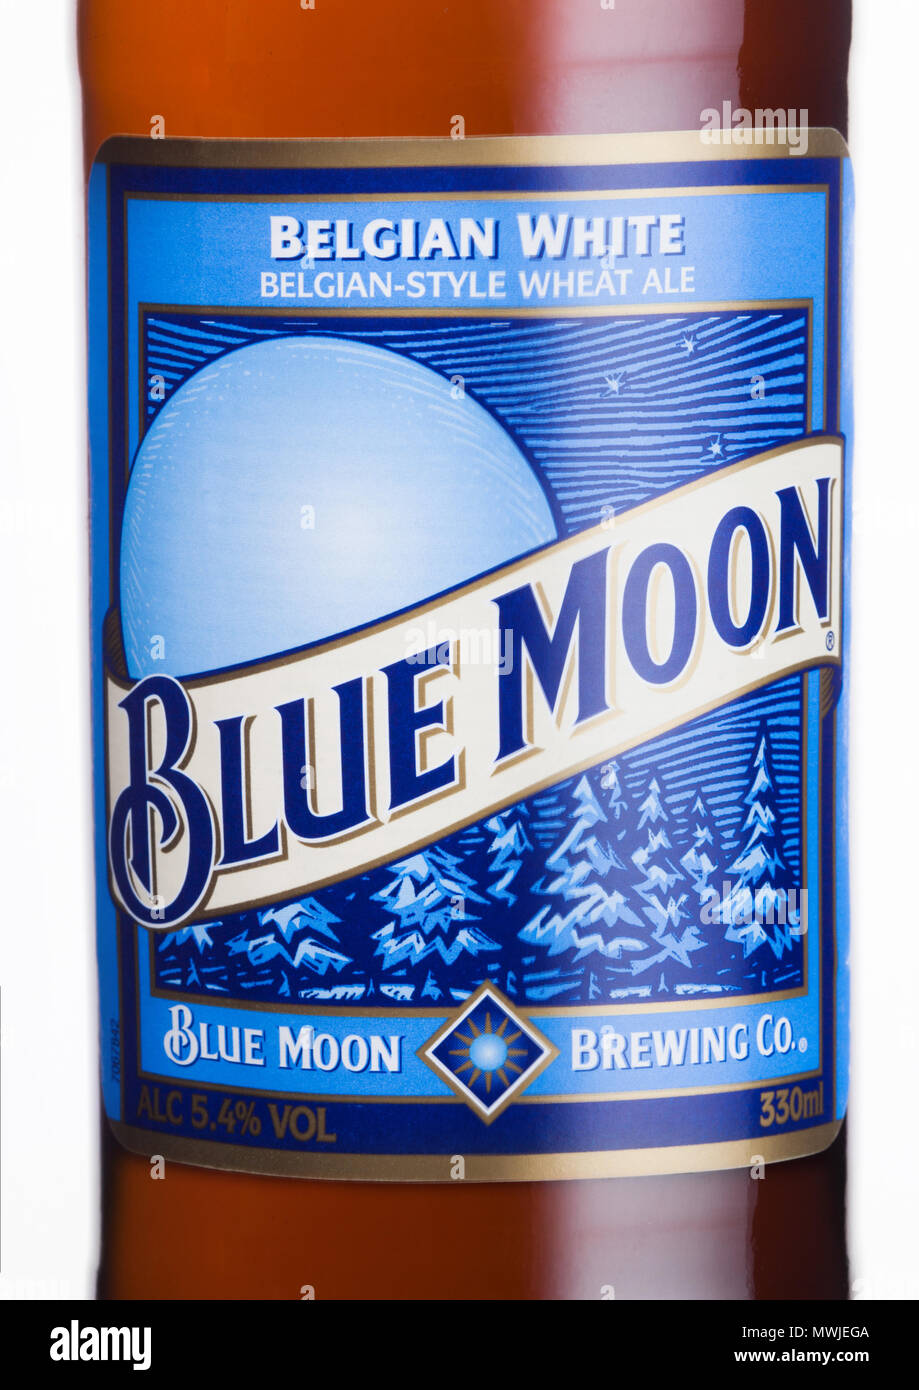 Londres, Reino Unido - 01 de junio, 2018: la etiqueta de botella de cerveza blanca belga Blue Moon, fabricada por MillerCoors sobre fondo blanco. Foto de stock